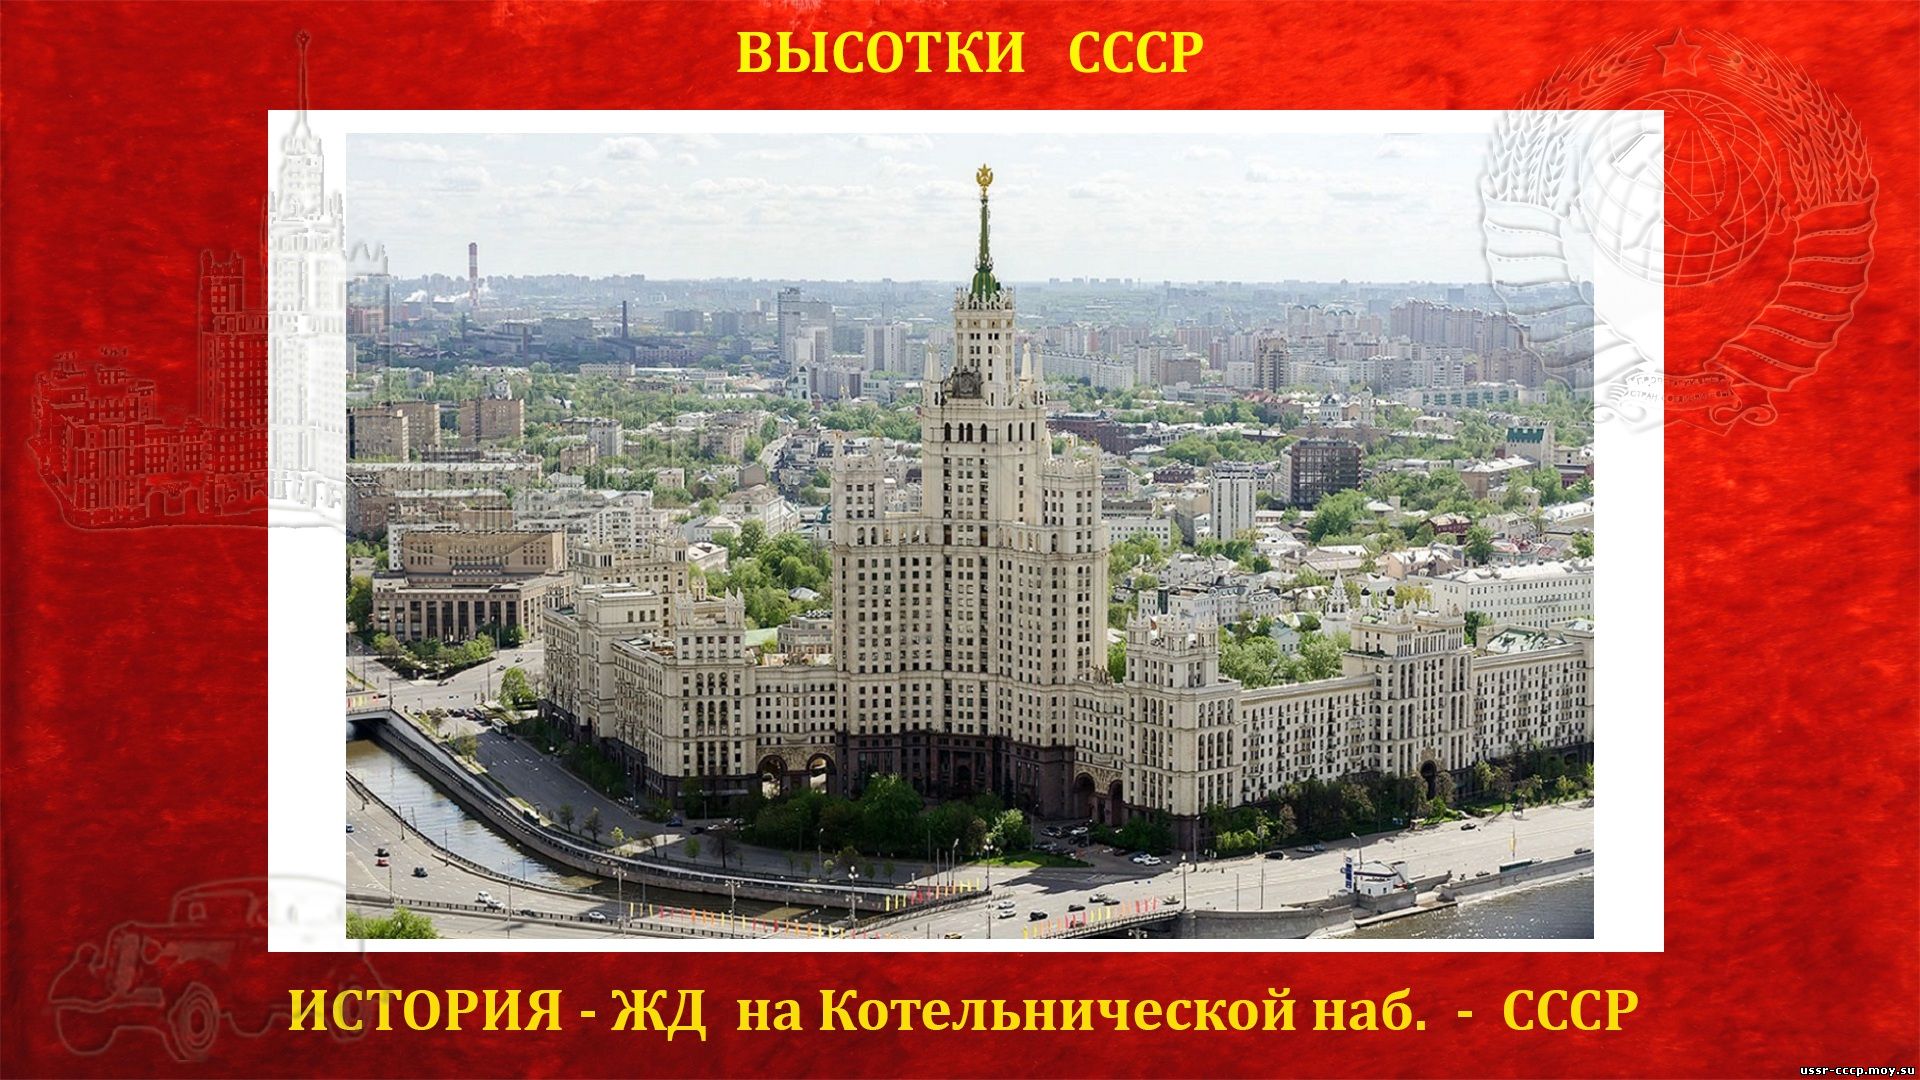 Жилой дом на Котельнической набережной (Москва) — (Сталинская высотка) — История строительства высотки